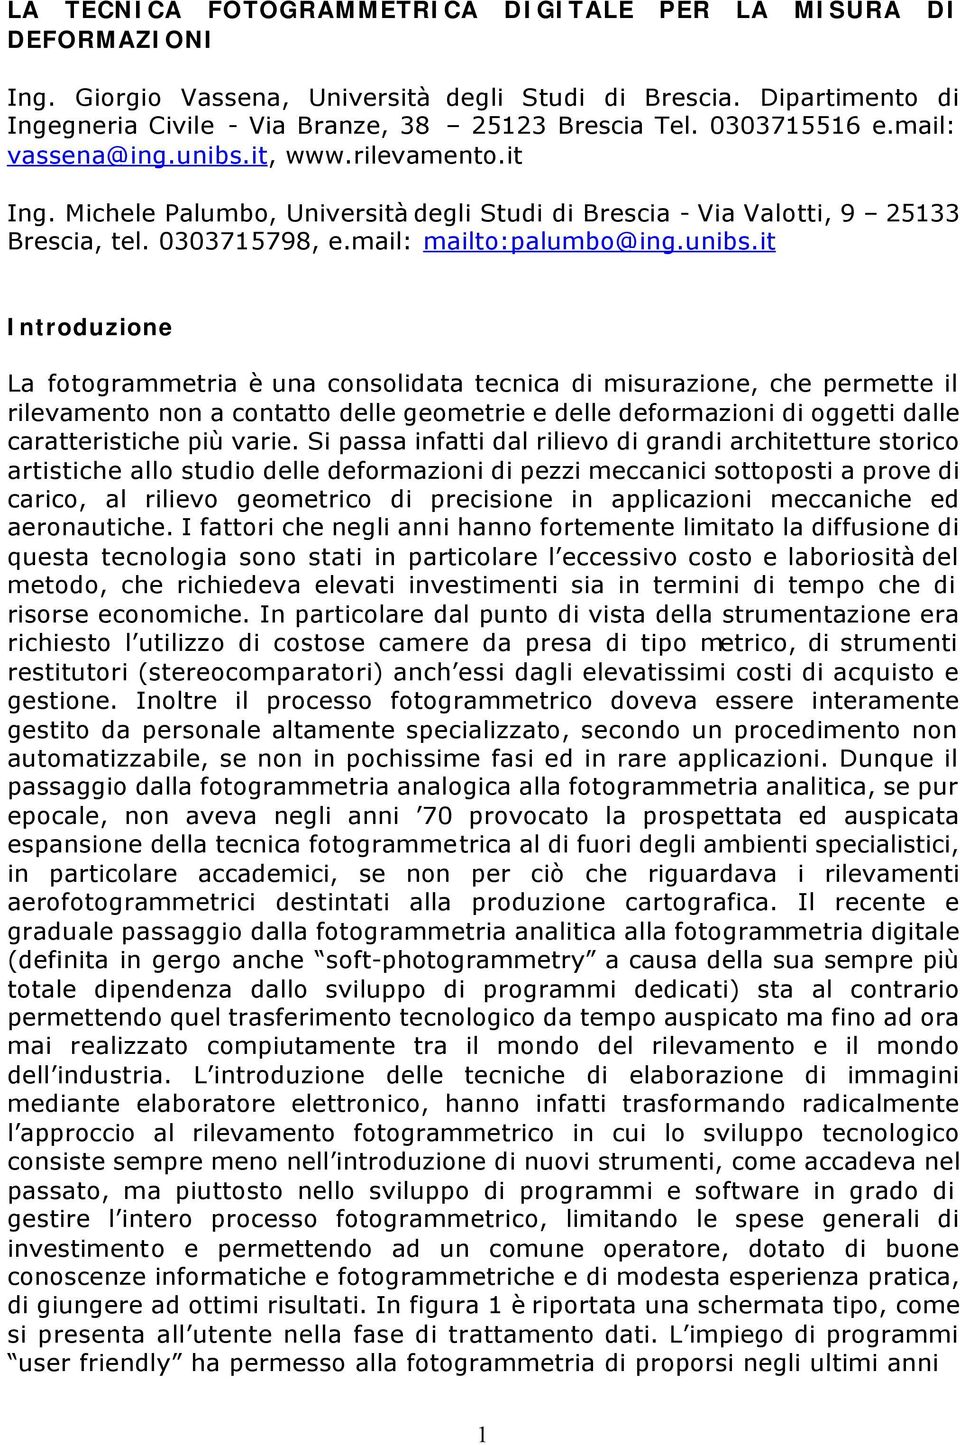 it, www.rilevamento.it Ing. Michele Palumbo, Università degli Studi di Brescia - Via Valotti, 9 25133 Brescia, tel. 0303715798, e.mail: mailto:palumbo@ing.unibs.